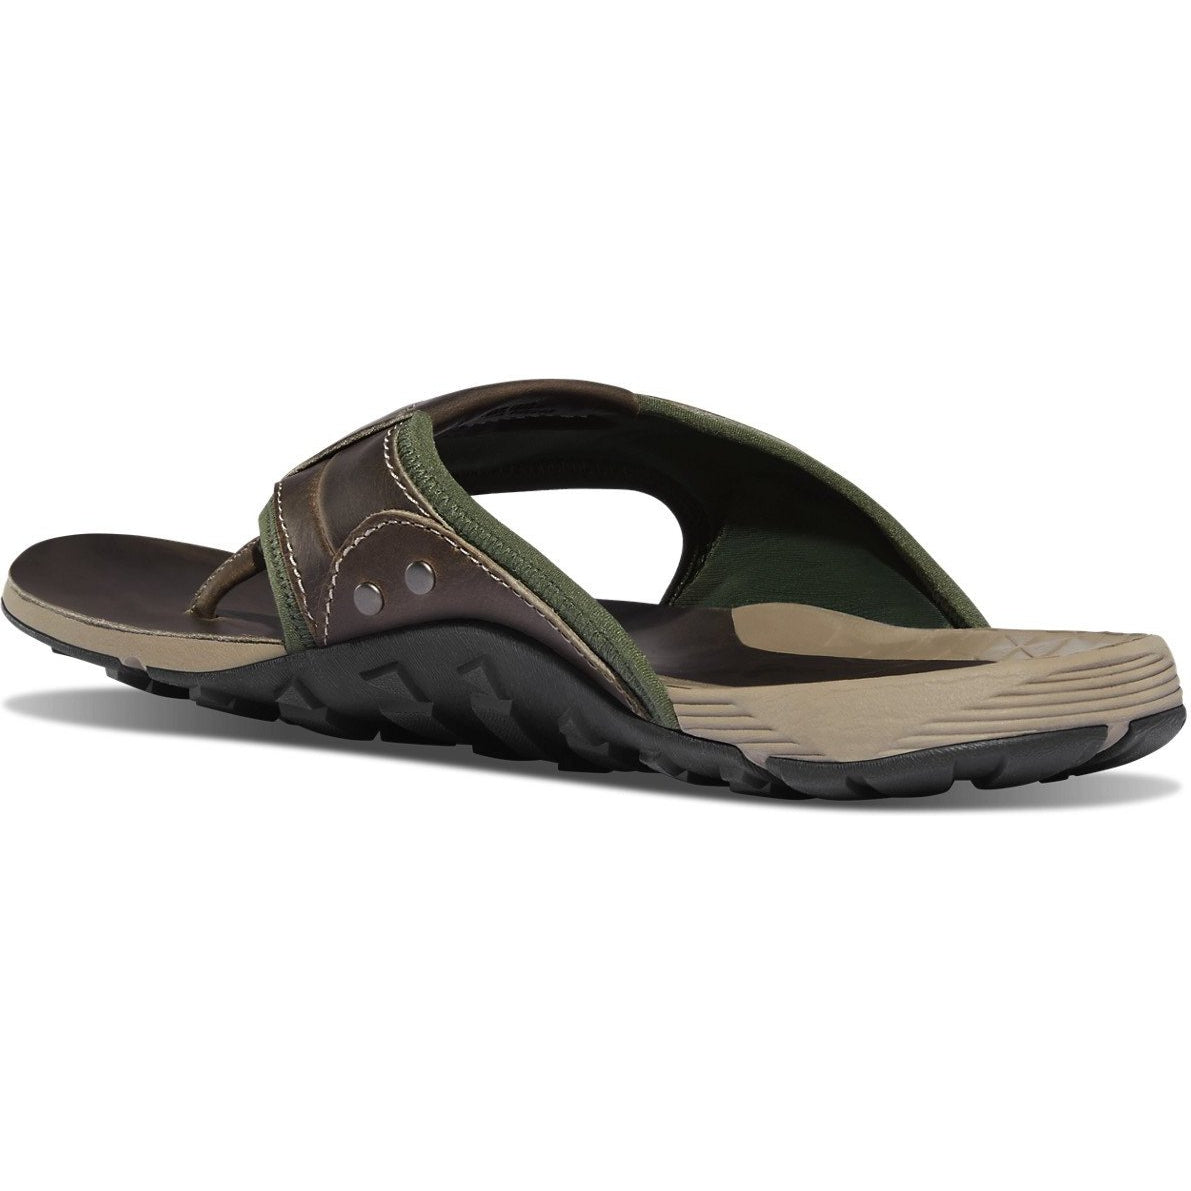 Danner Men's Lost Coast Sandal - Gray - 68134  - Overlook Boots